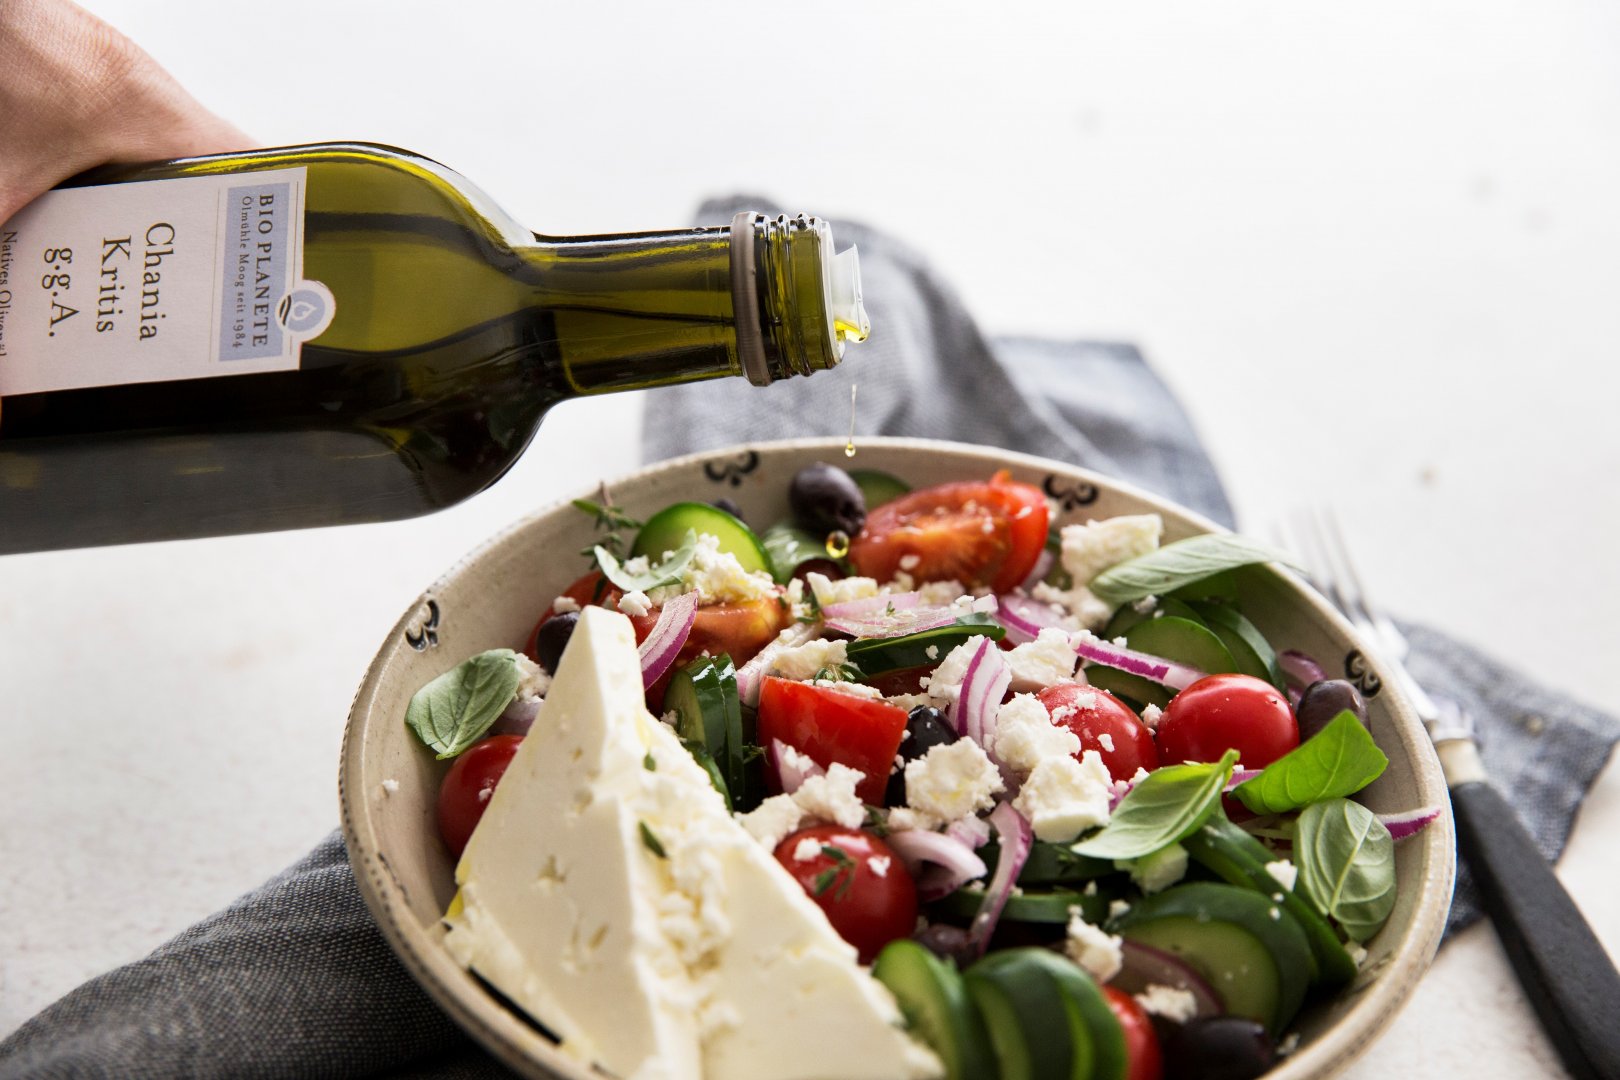 Griechischer Salat mit Feta Käse wird übergossen mit kretischem BIO PLANETE Olivenöl